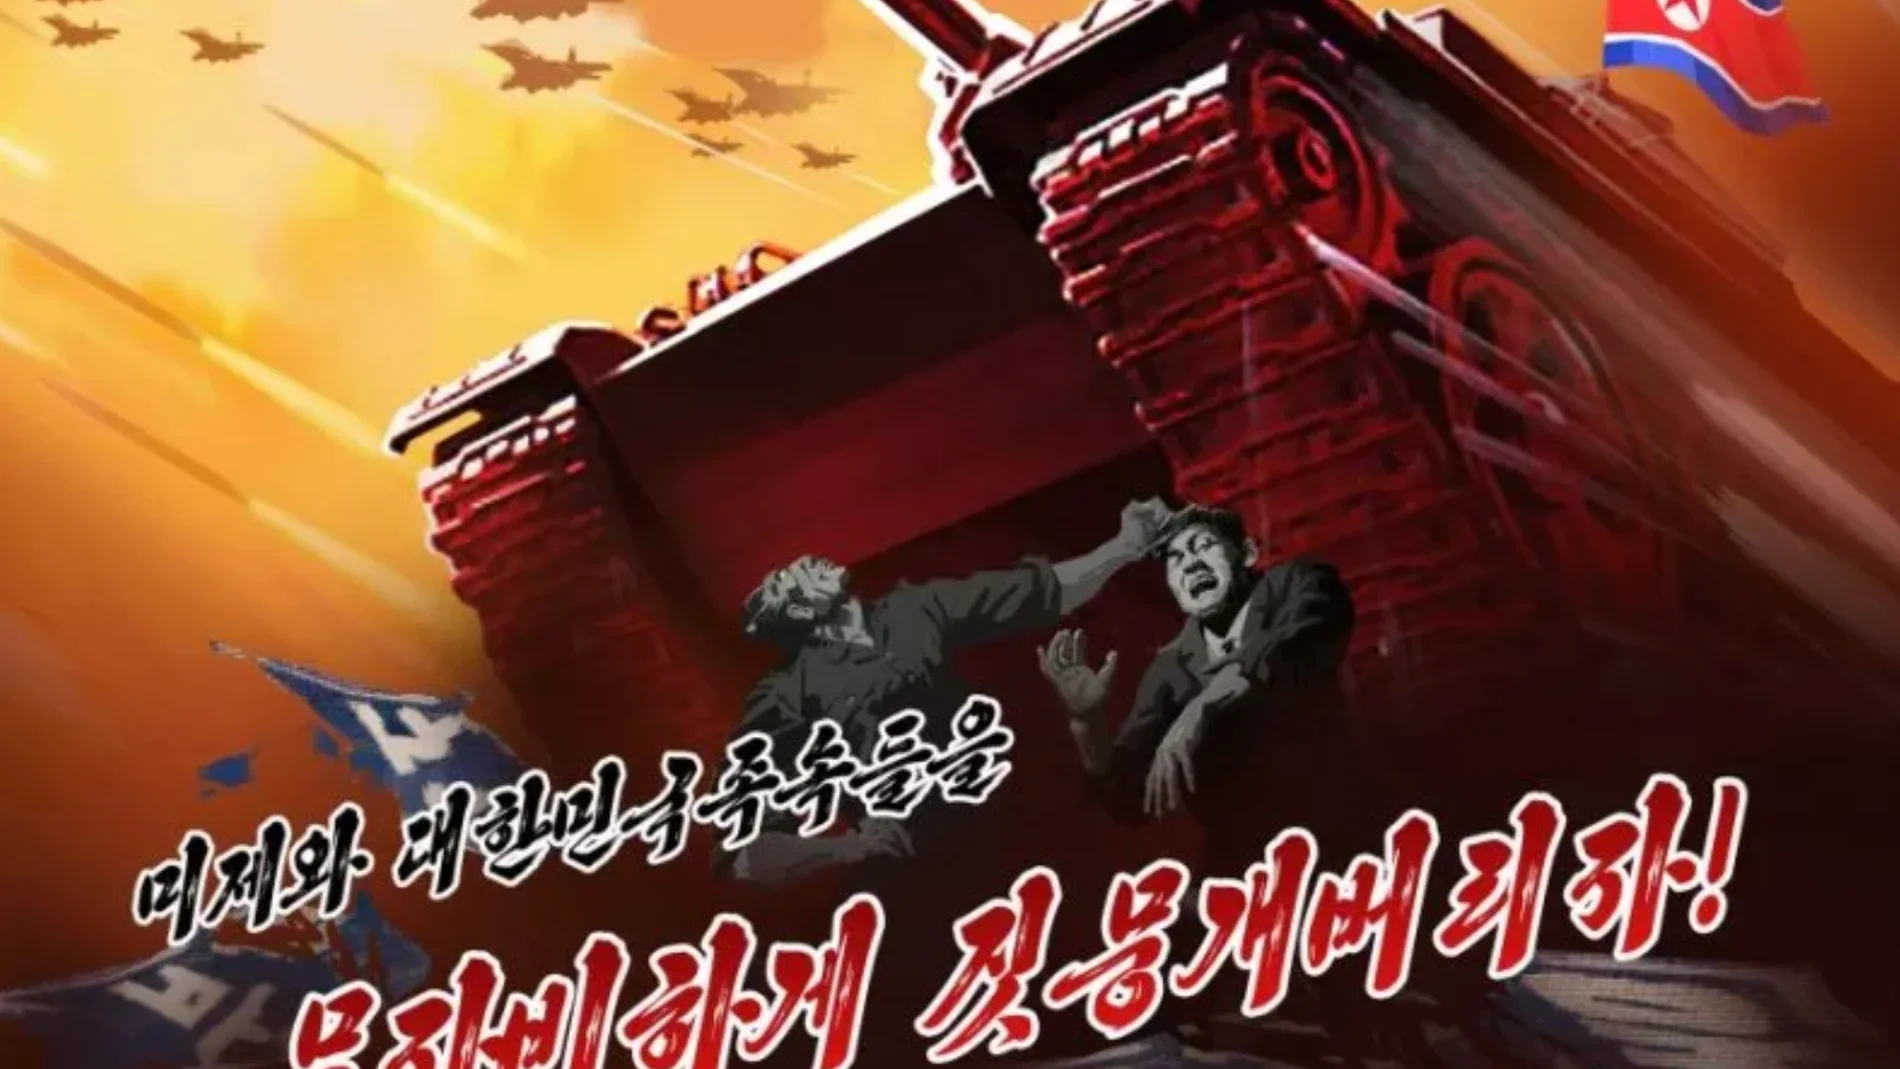 Uno de los carteles de propaganda bélica de Corea del Norte contra EE UU